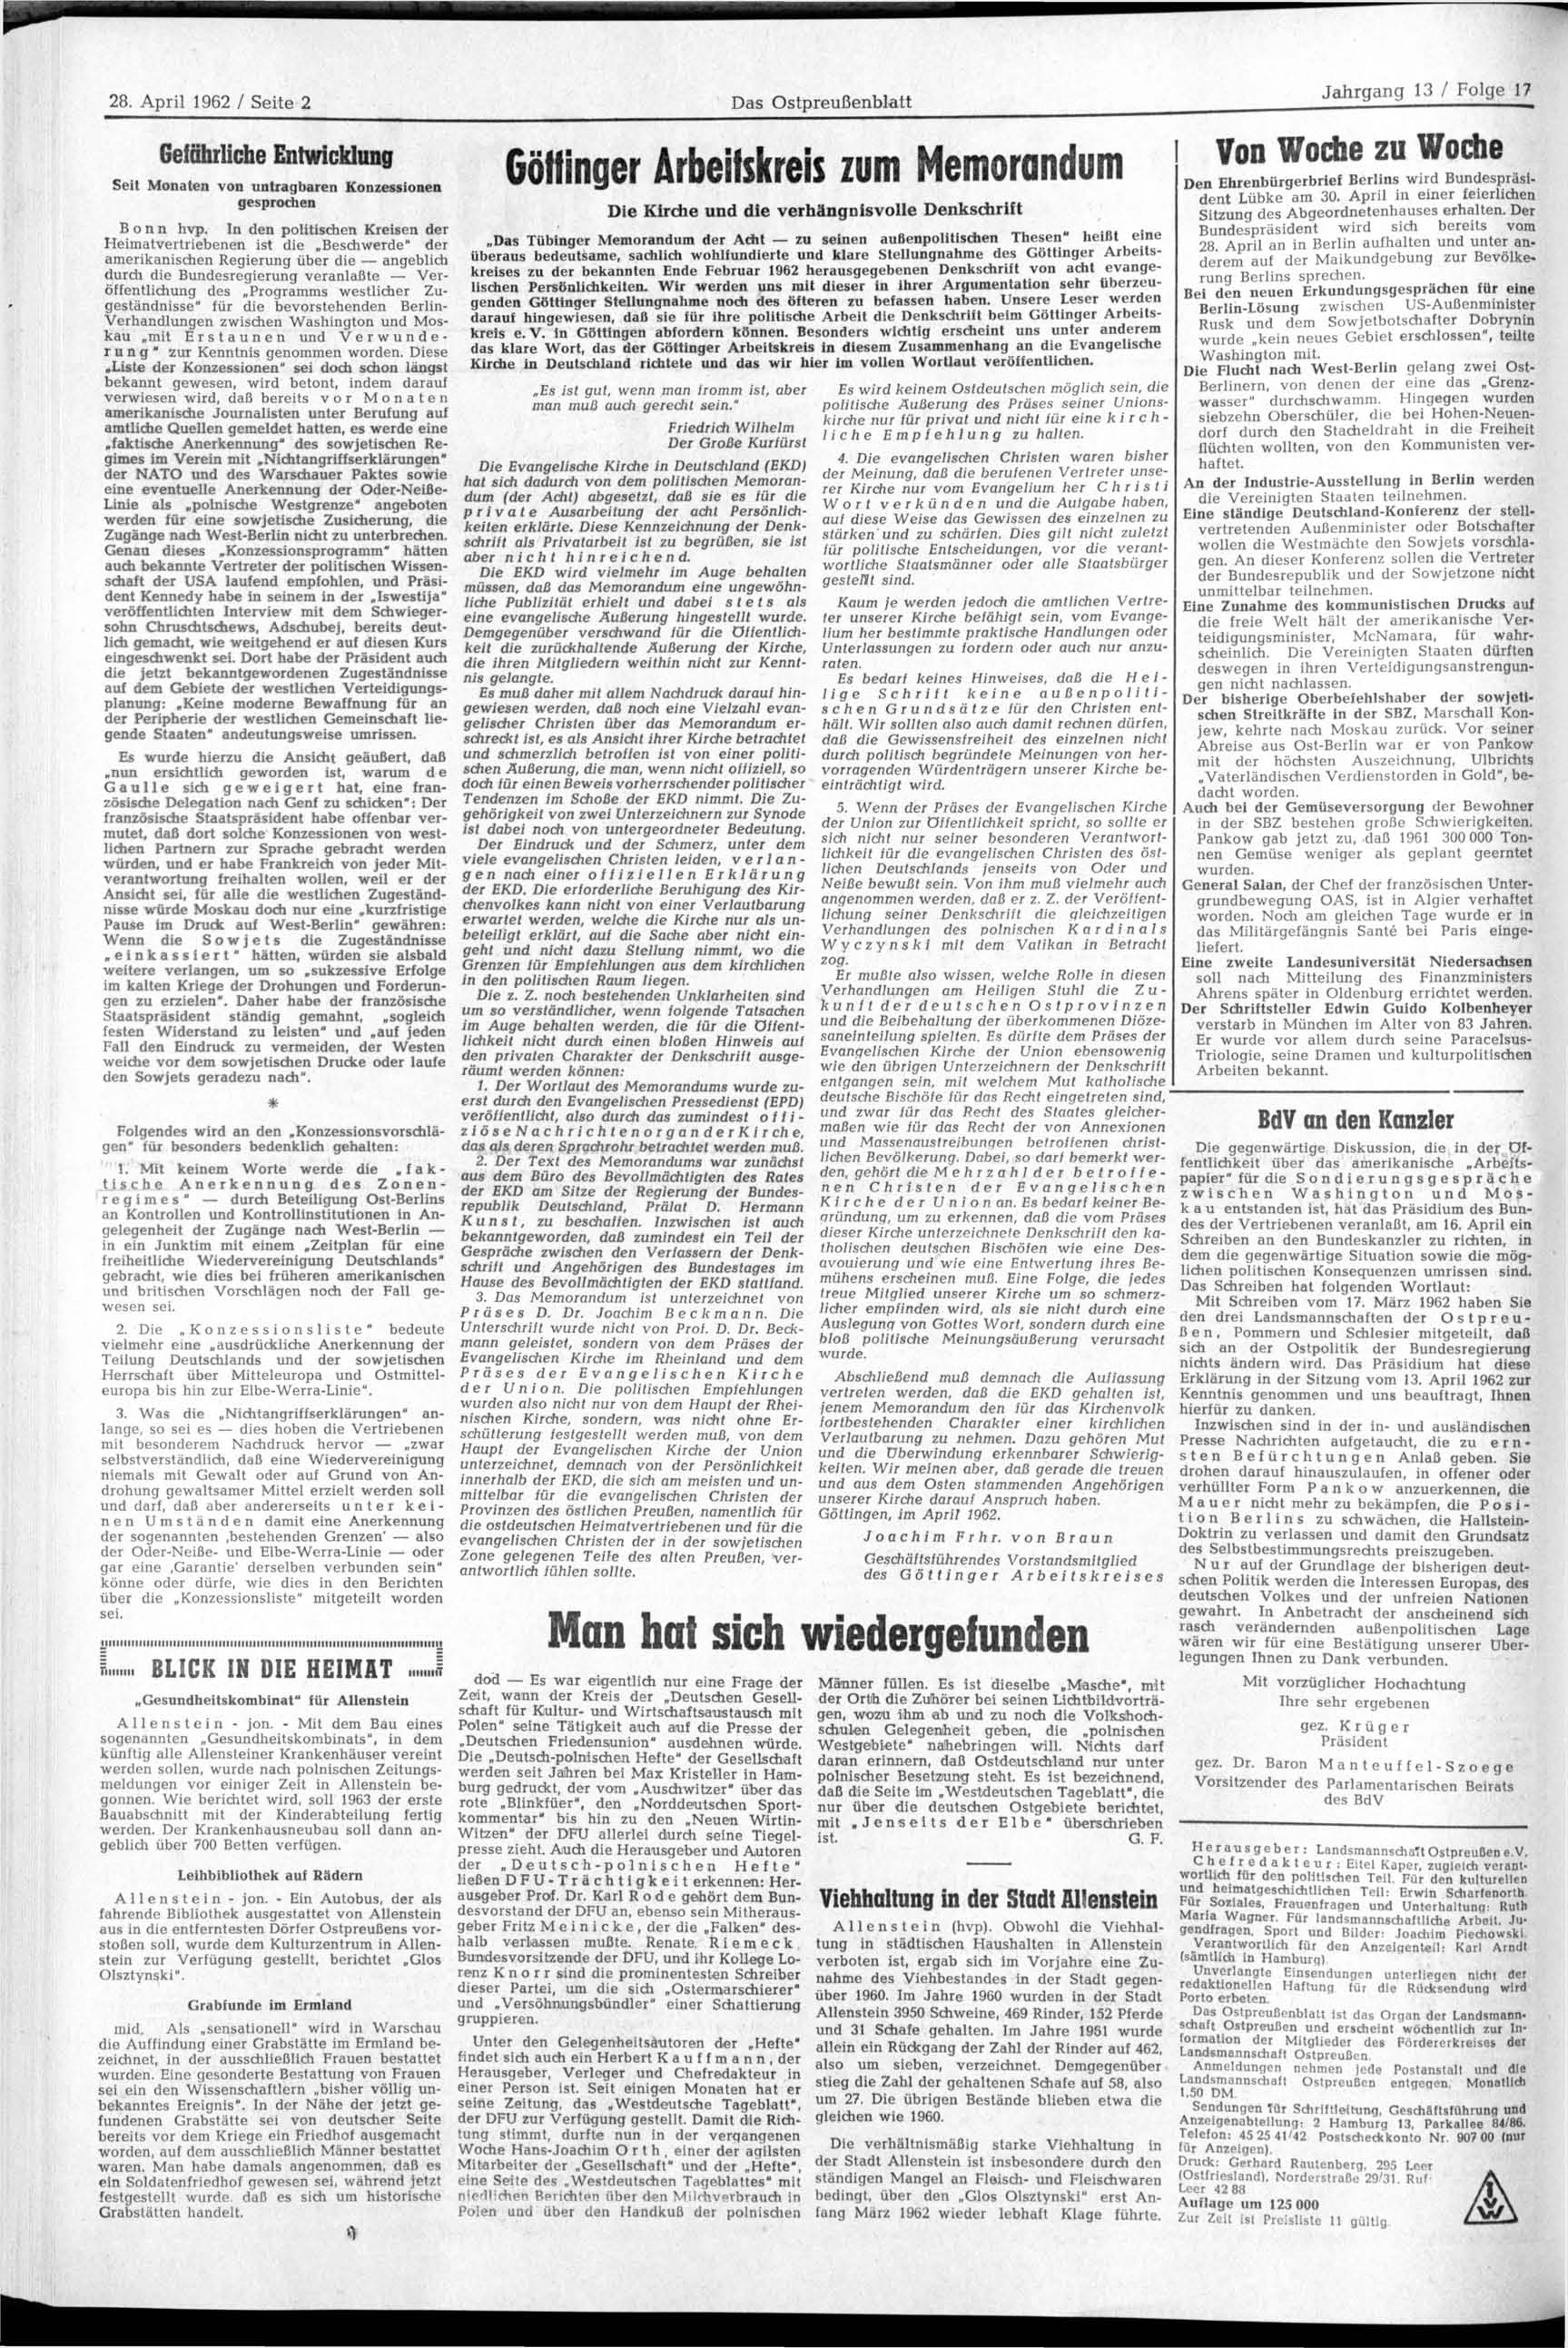 28. April 1962 / Seite 2 Das Ostpreußenblatt Gefährliche Entwicwun» Gbffinger Arbeitskreis zum Memorandum 3.